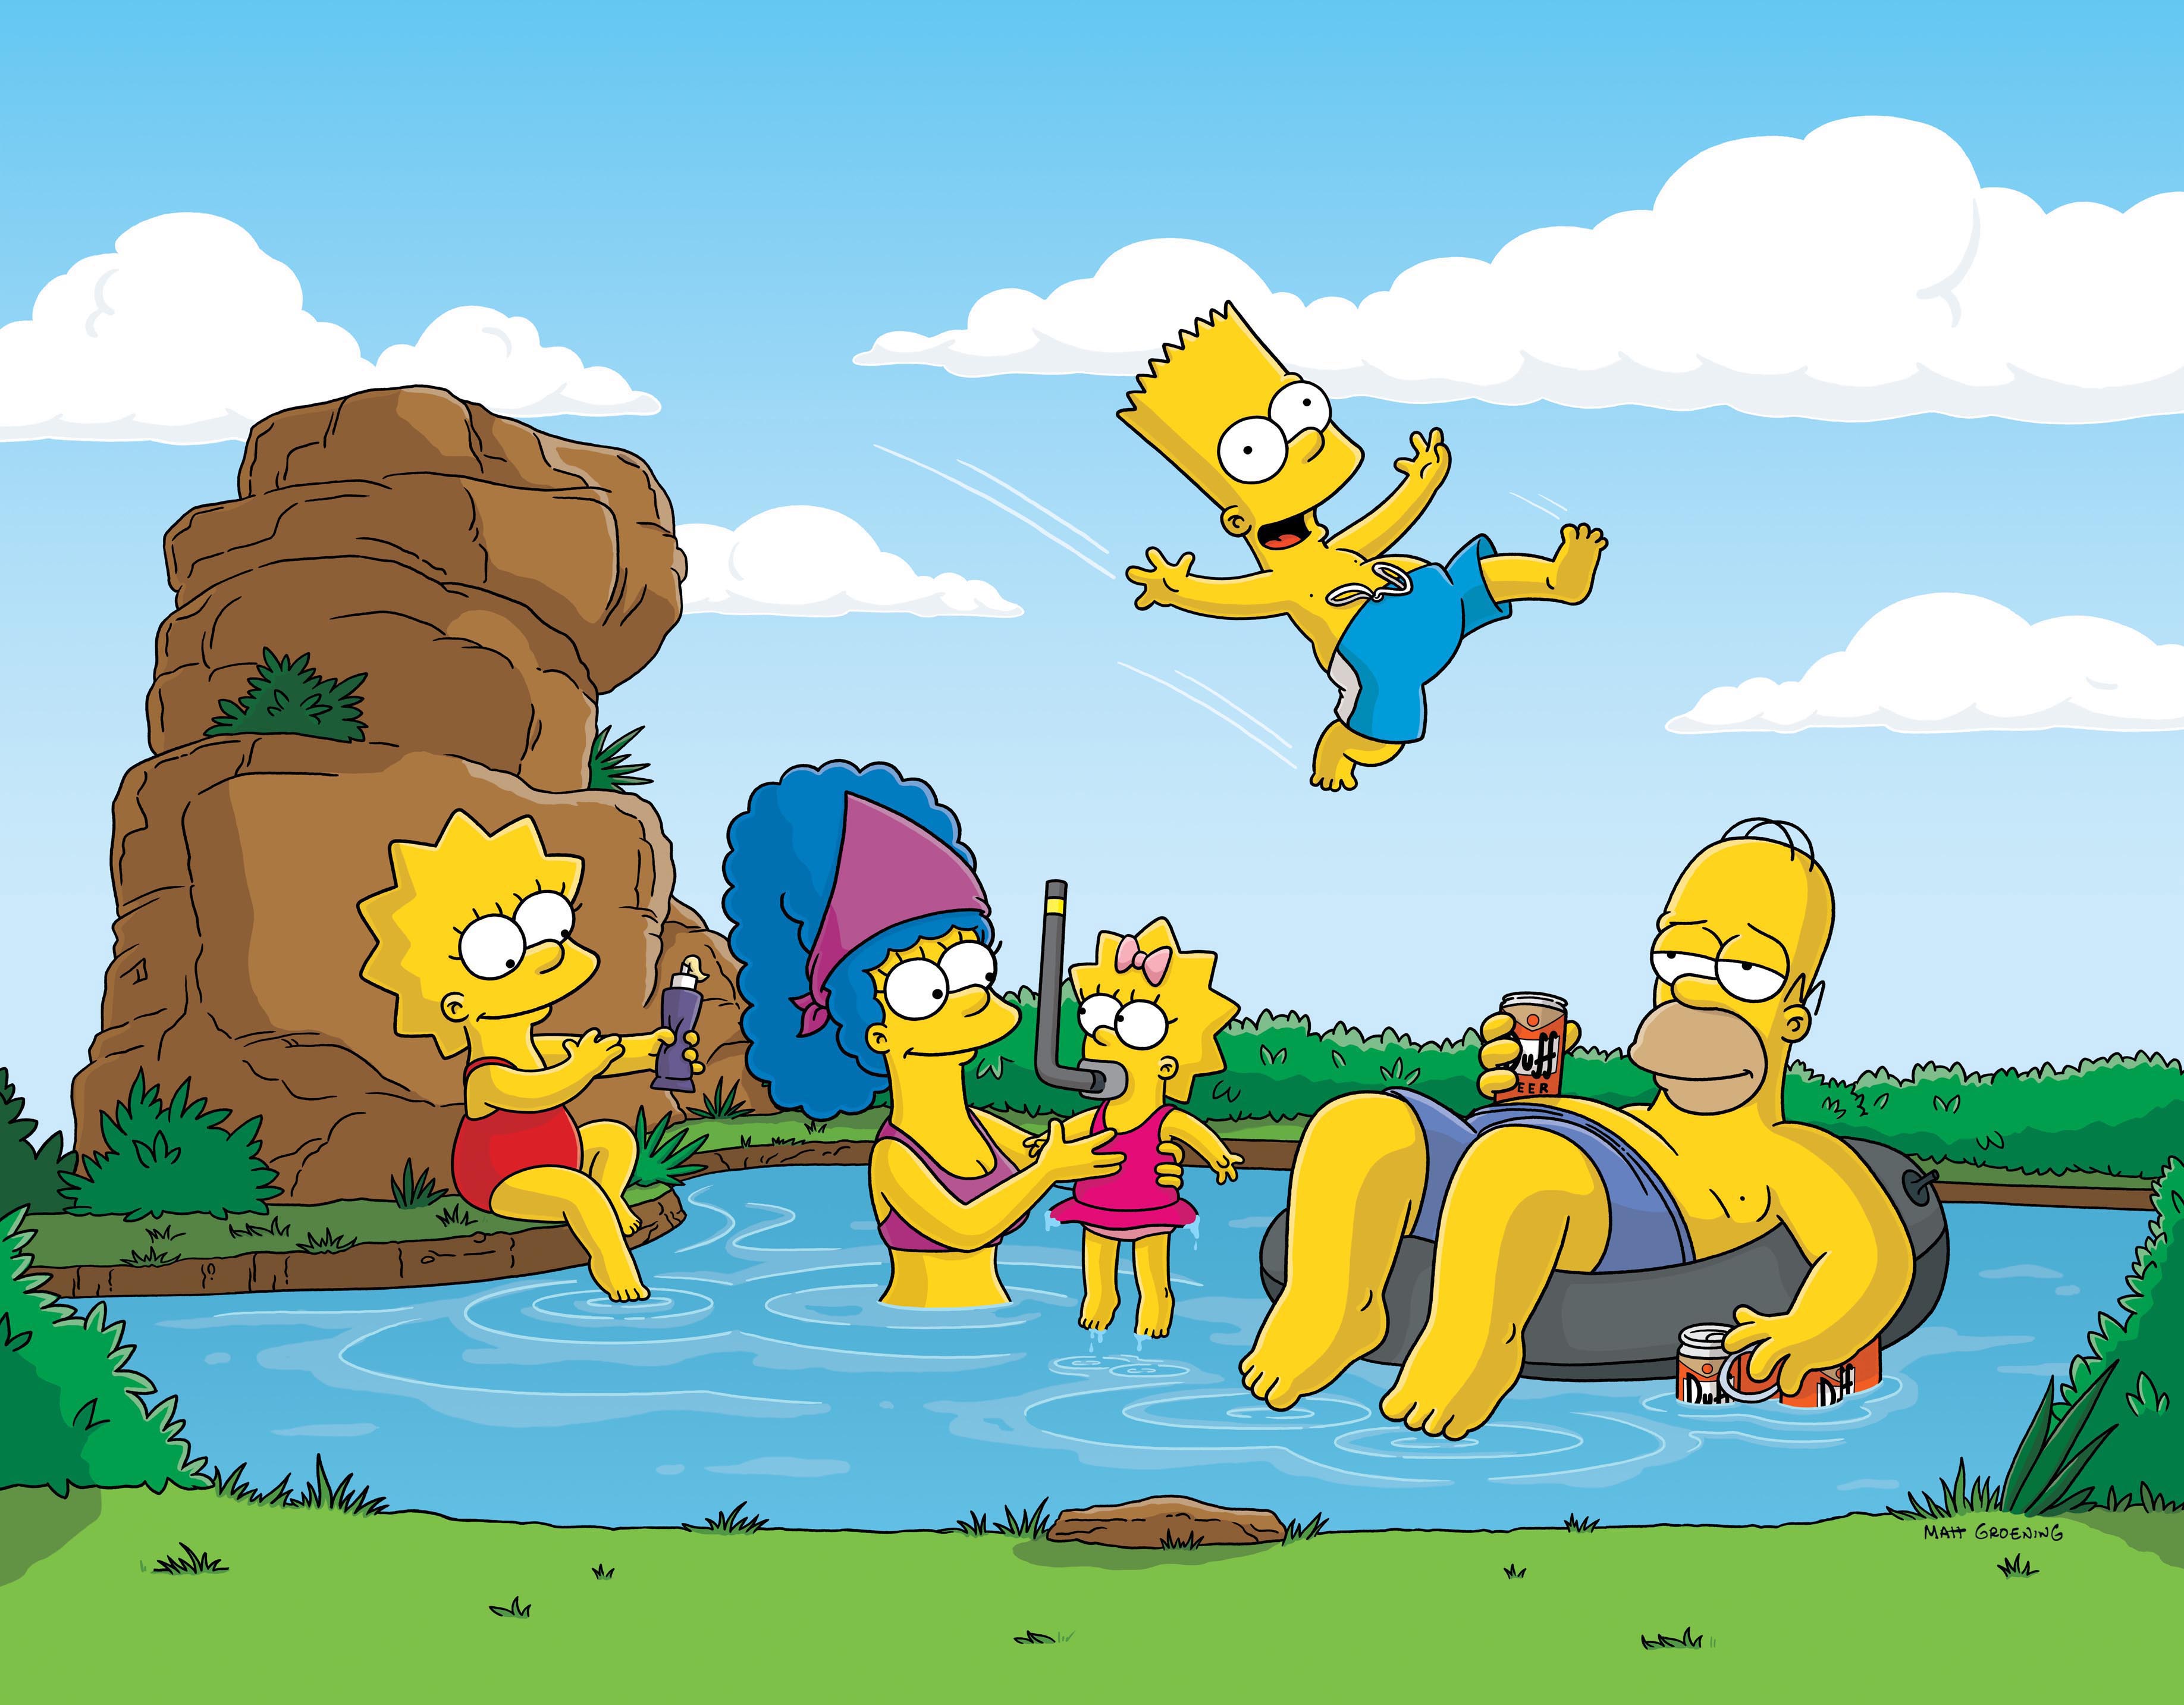 Bart Simpson Homer Simpson Lisa Simpson Maggie Simpson Marge Simpson The Simpsons 3672x2866